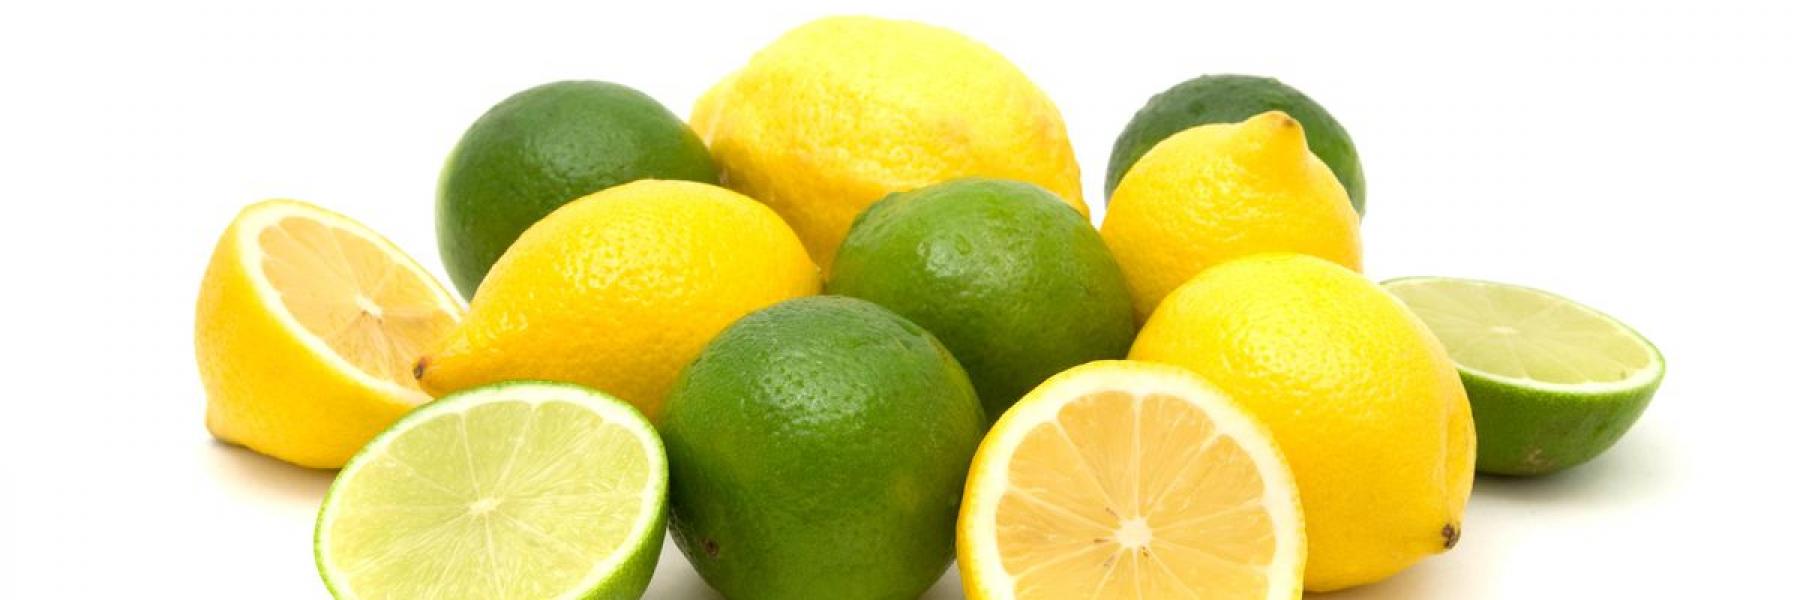 ما علاقة الليمون بضغط الدم؟